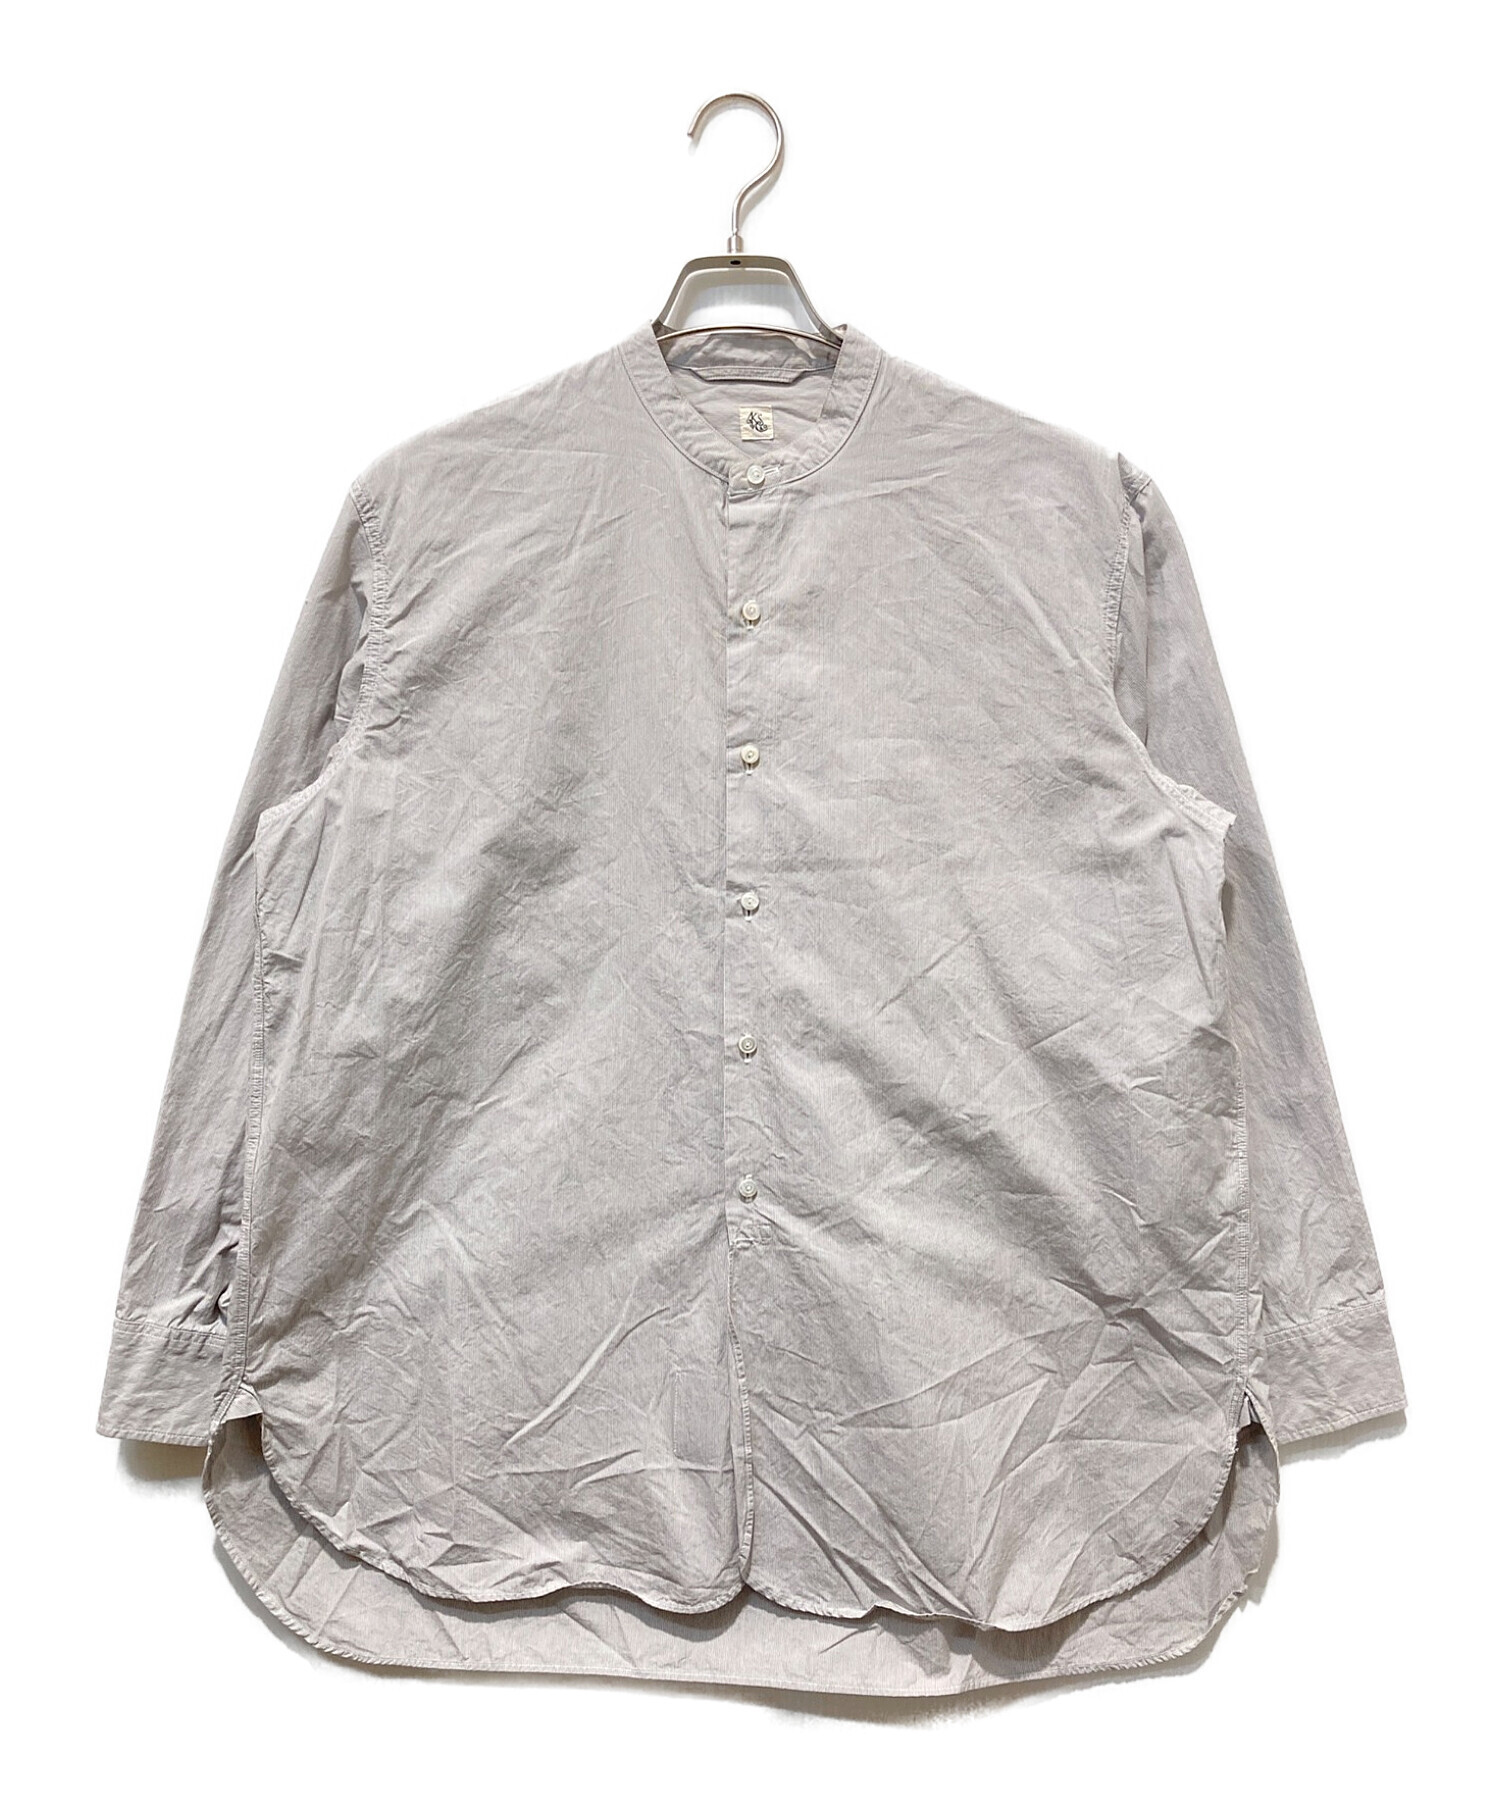 KAPTAIN SUNSHINE (キャプテンサンシャイン) バンドカラーシャツ グレー サイズ:36